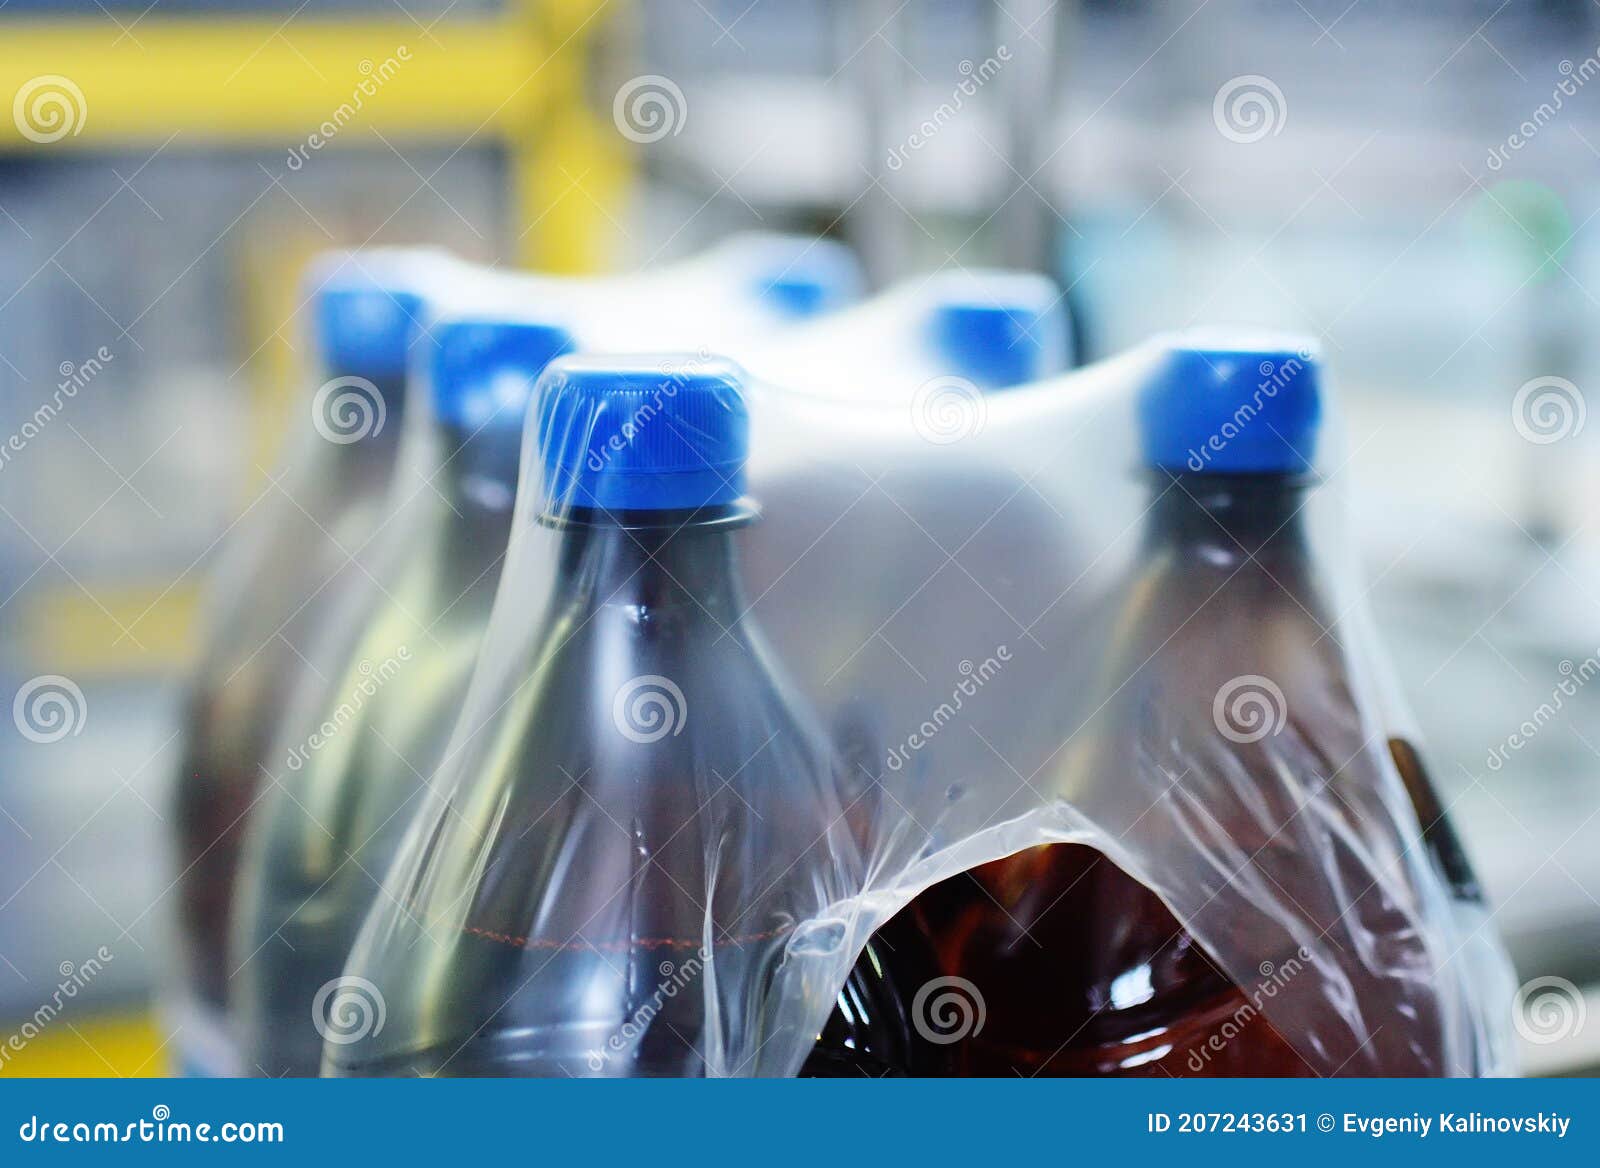 vistazo Confidencial Lágrima Embalaje De Botellas De Plástico Para Mascotas Con Cerveza O Líquido En Un  Envase De Polietileno. Imagen de archivo - Imagen de agua, moderno:  207243631